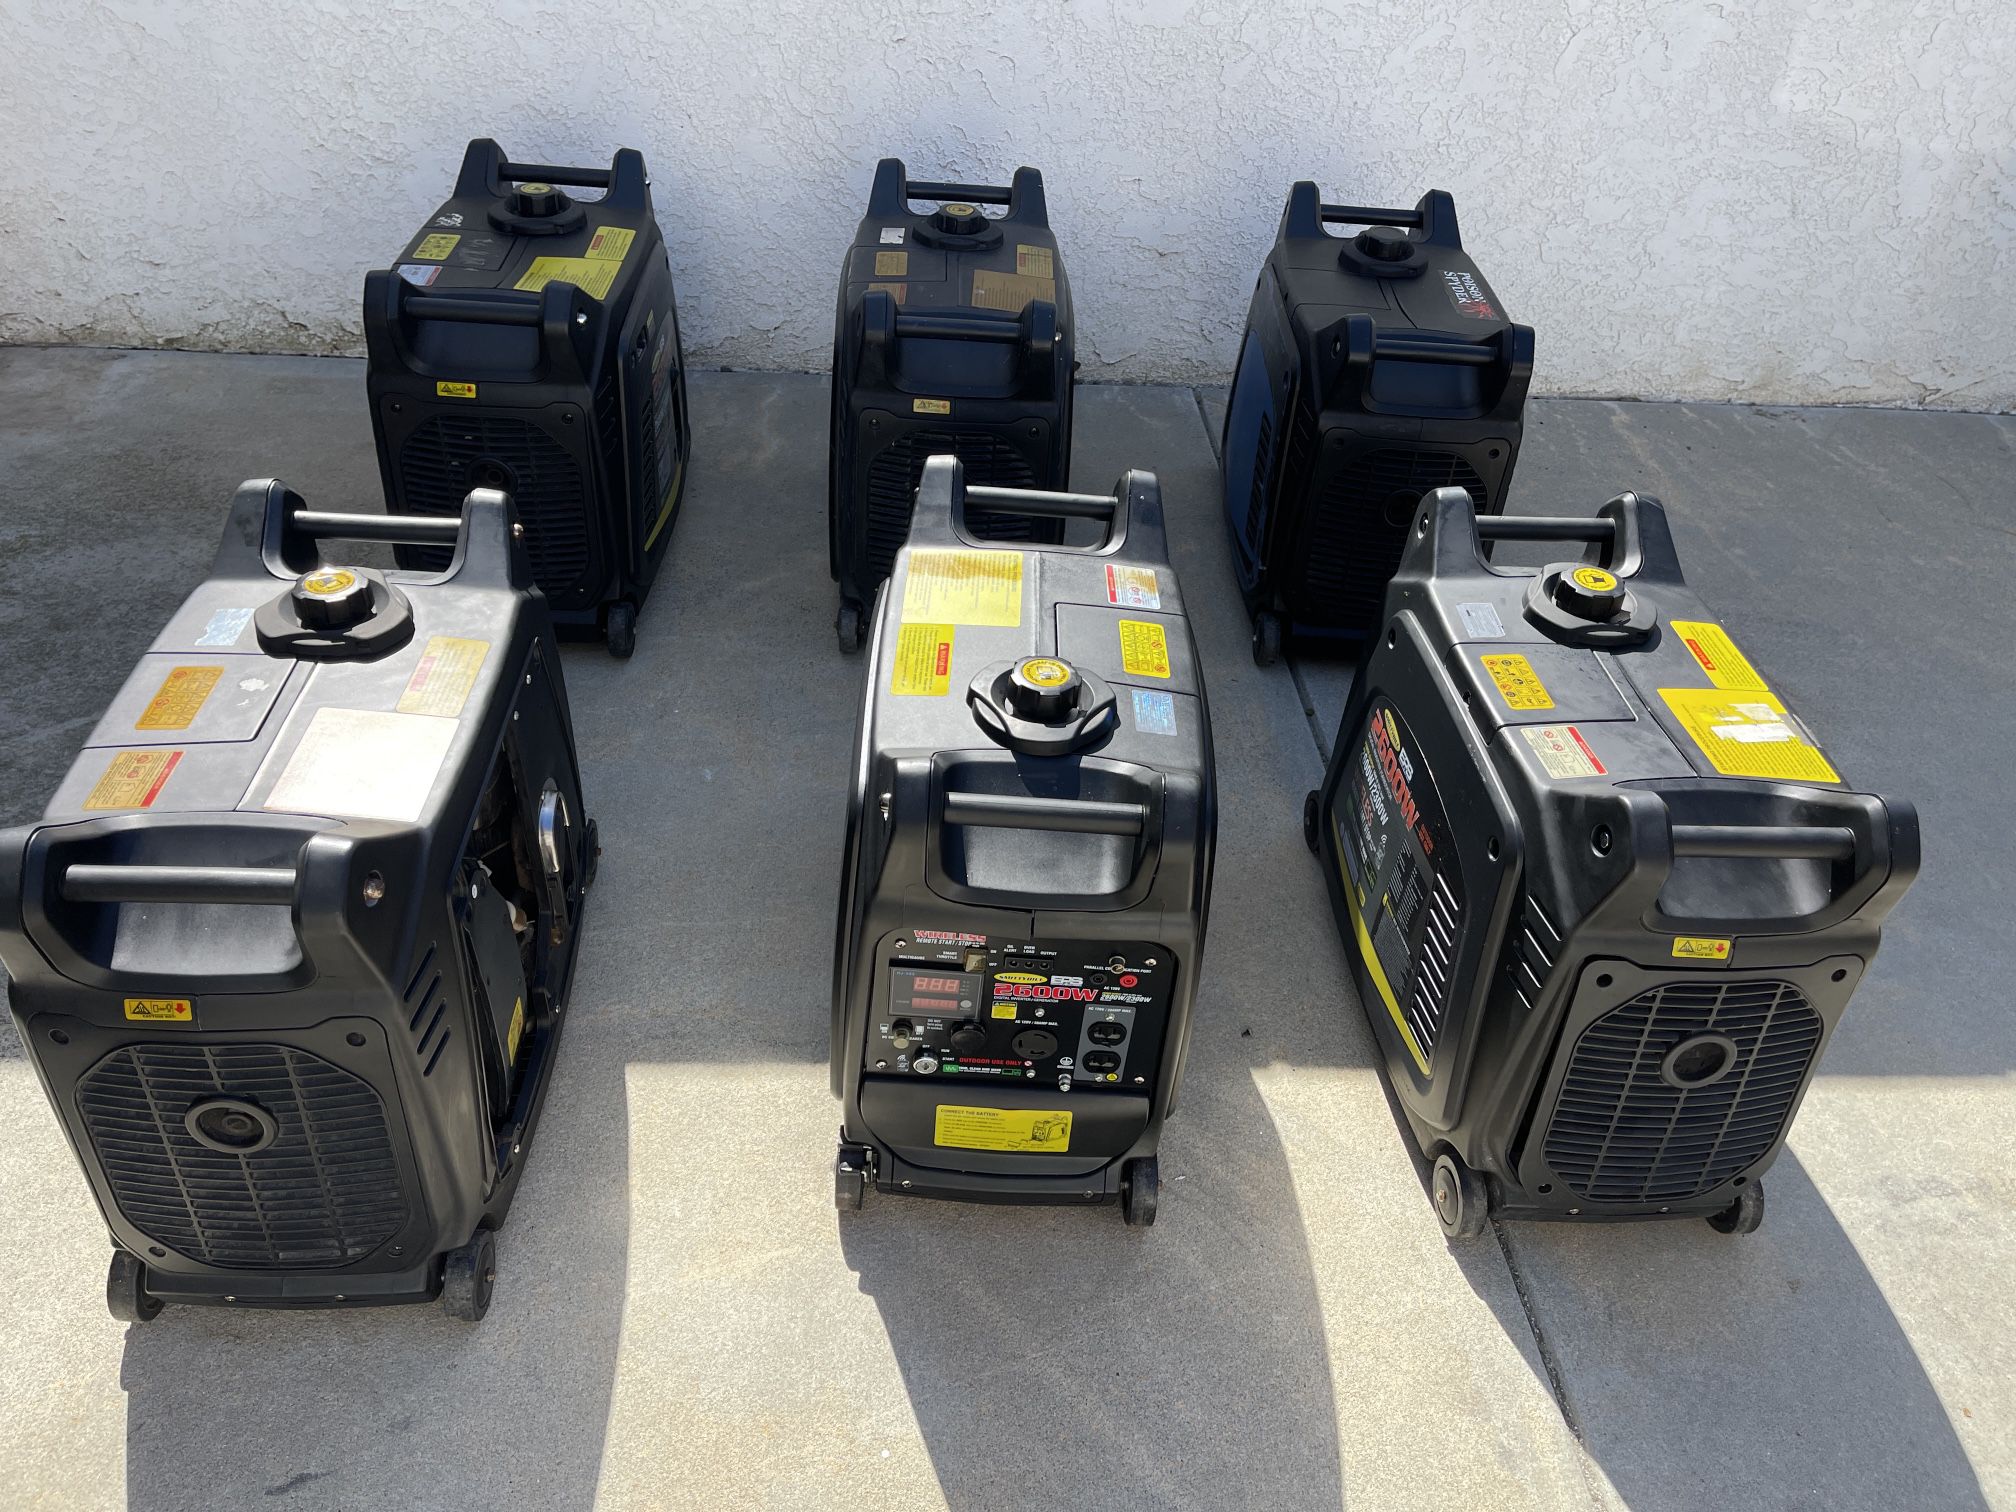 Lot of 6 Generators